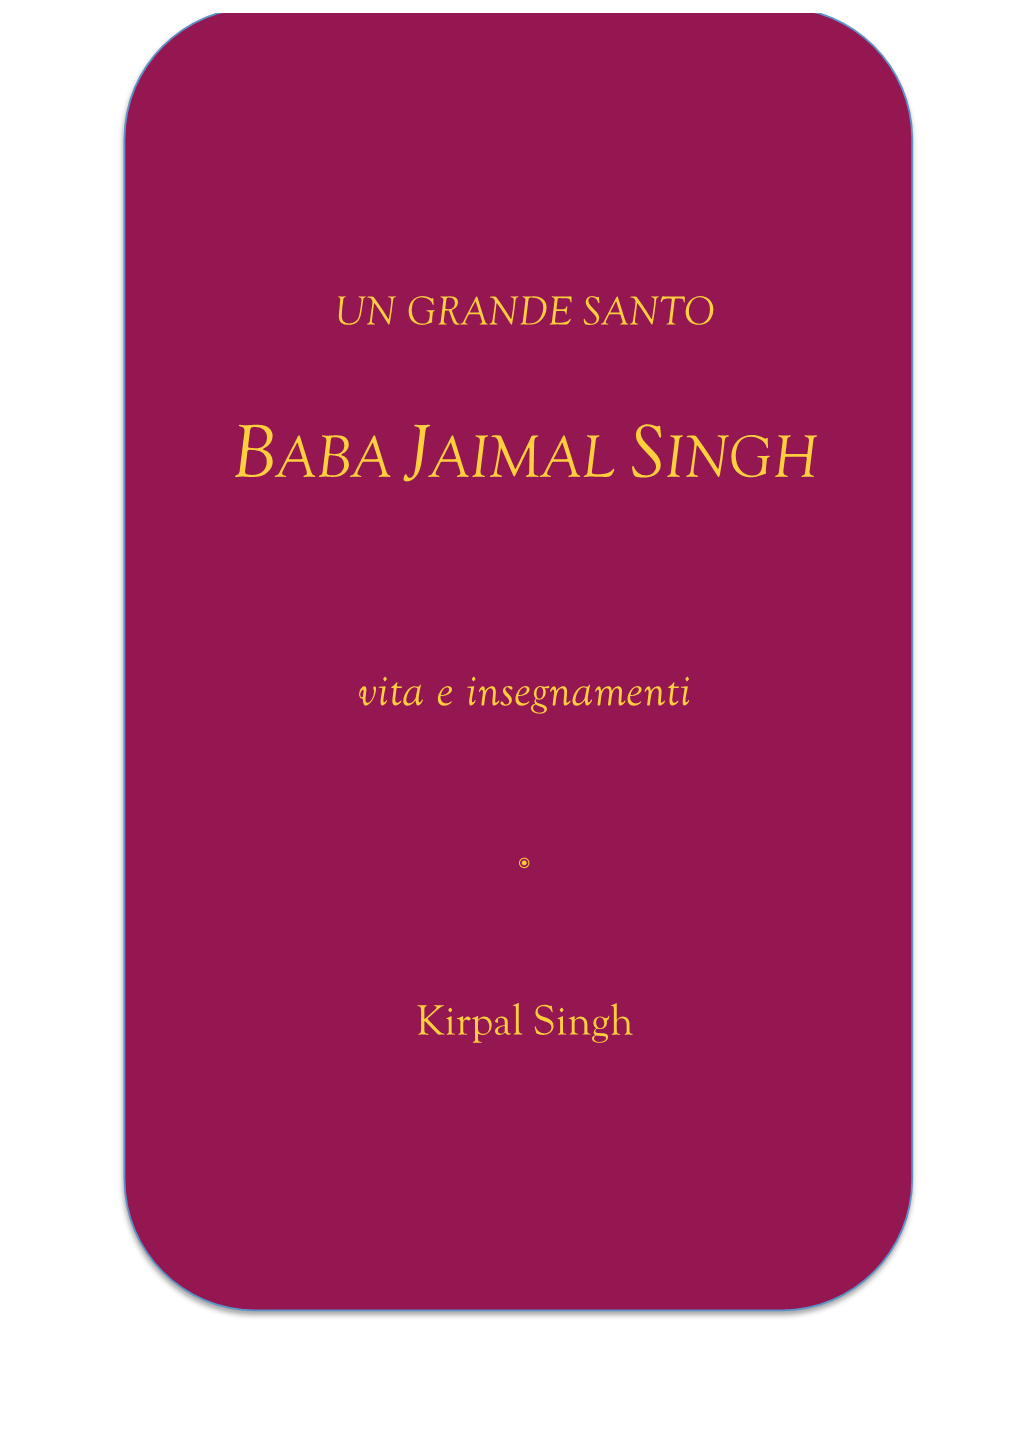 Baba Jaimal Singh